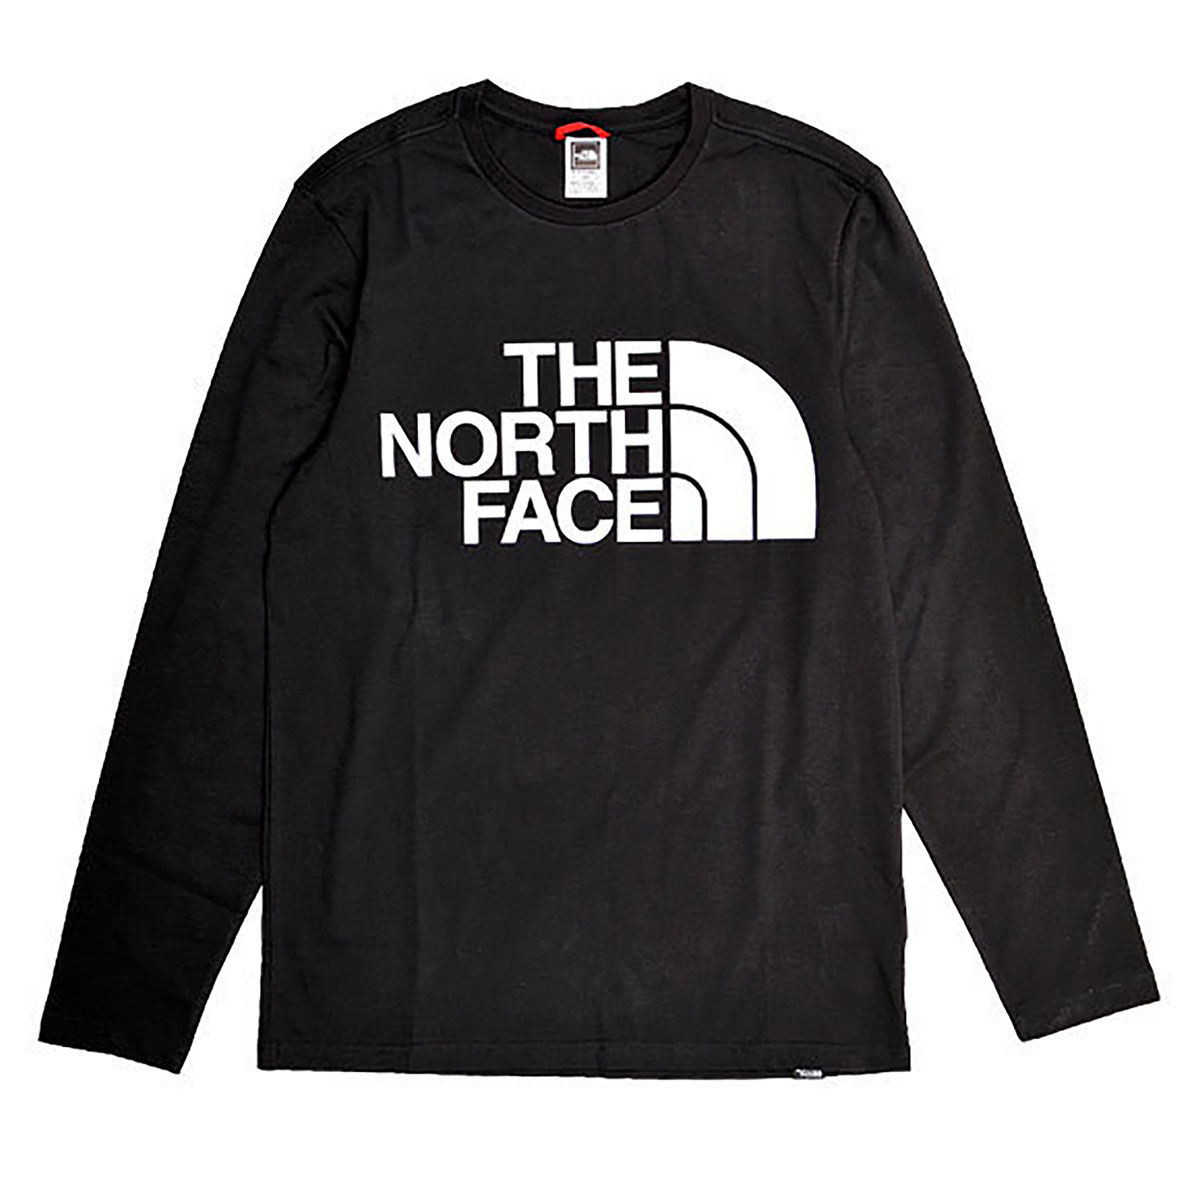 The North Face (ザ・ノースフェイス) メンズロンT  LサイズロンT